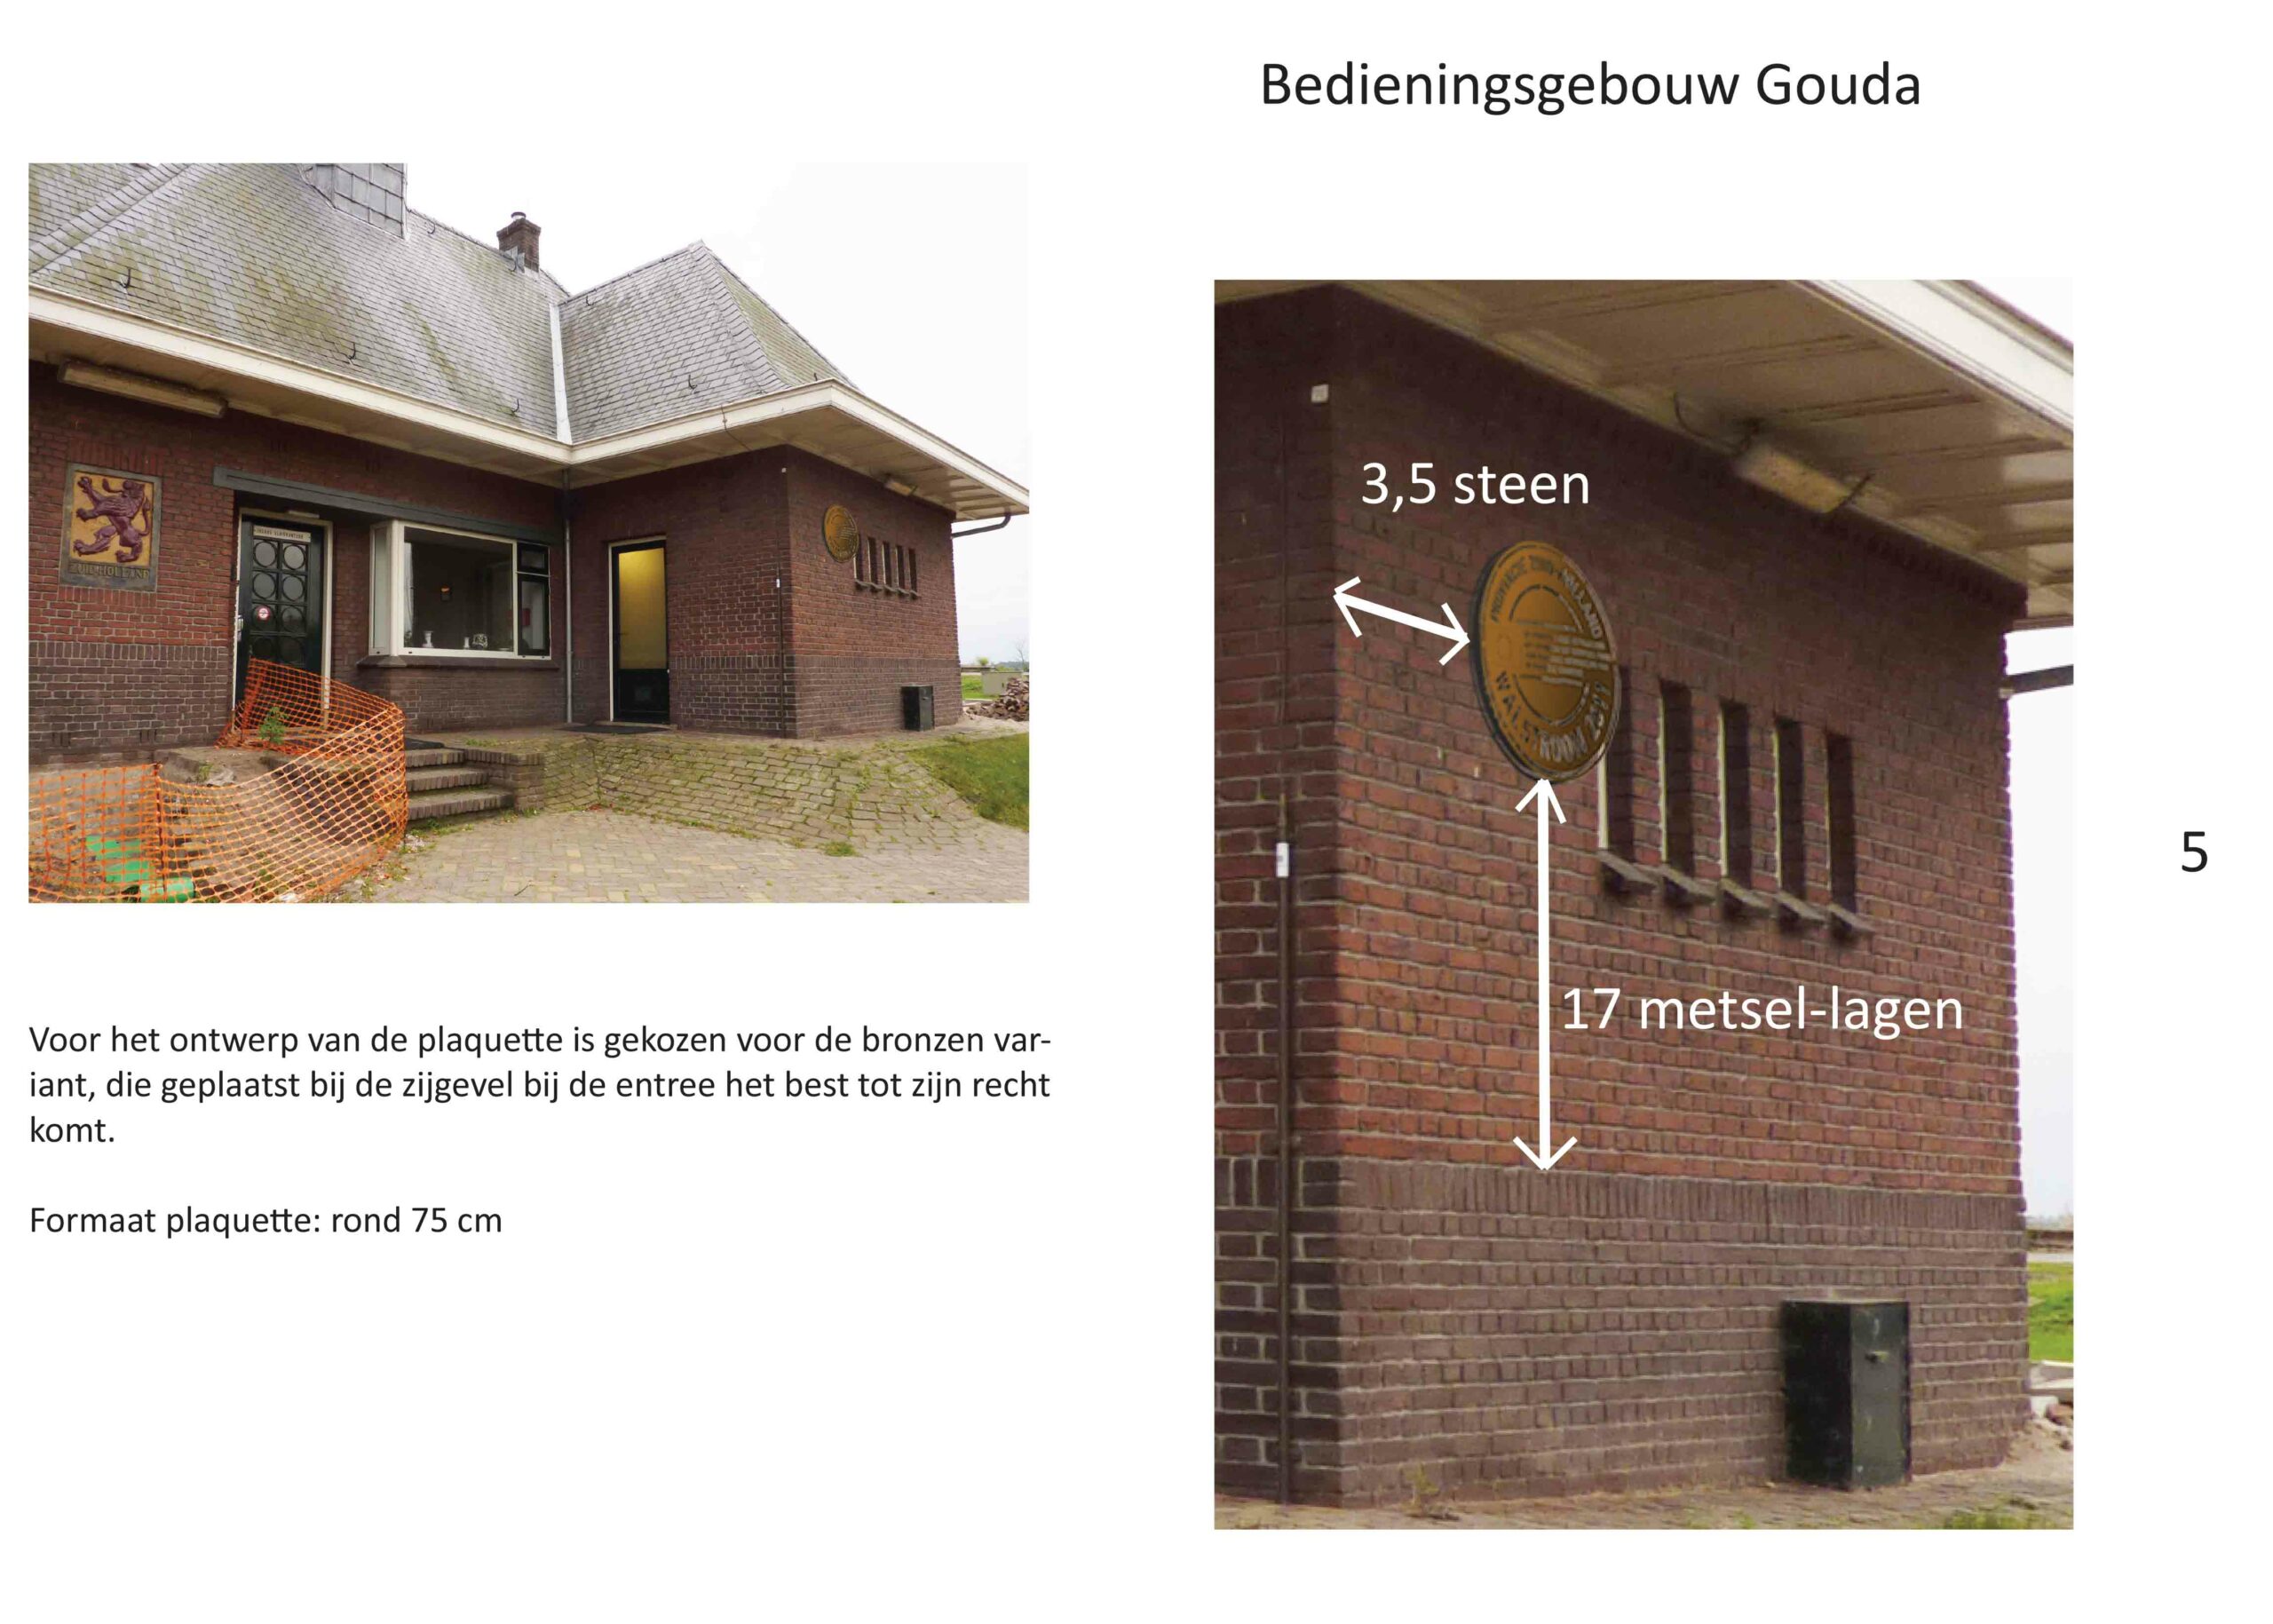 DirryOntwerpt 0ntwerp walstroom subsidie Plaquettes op 3 locaties Provincie Zuid Holland 5